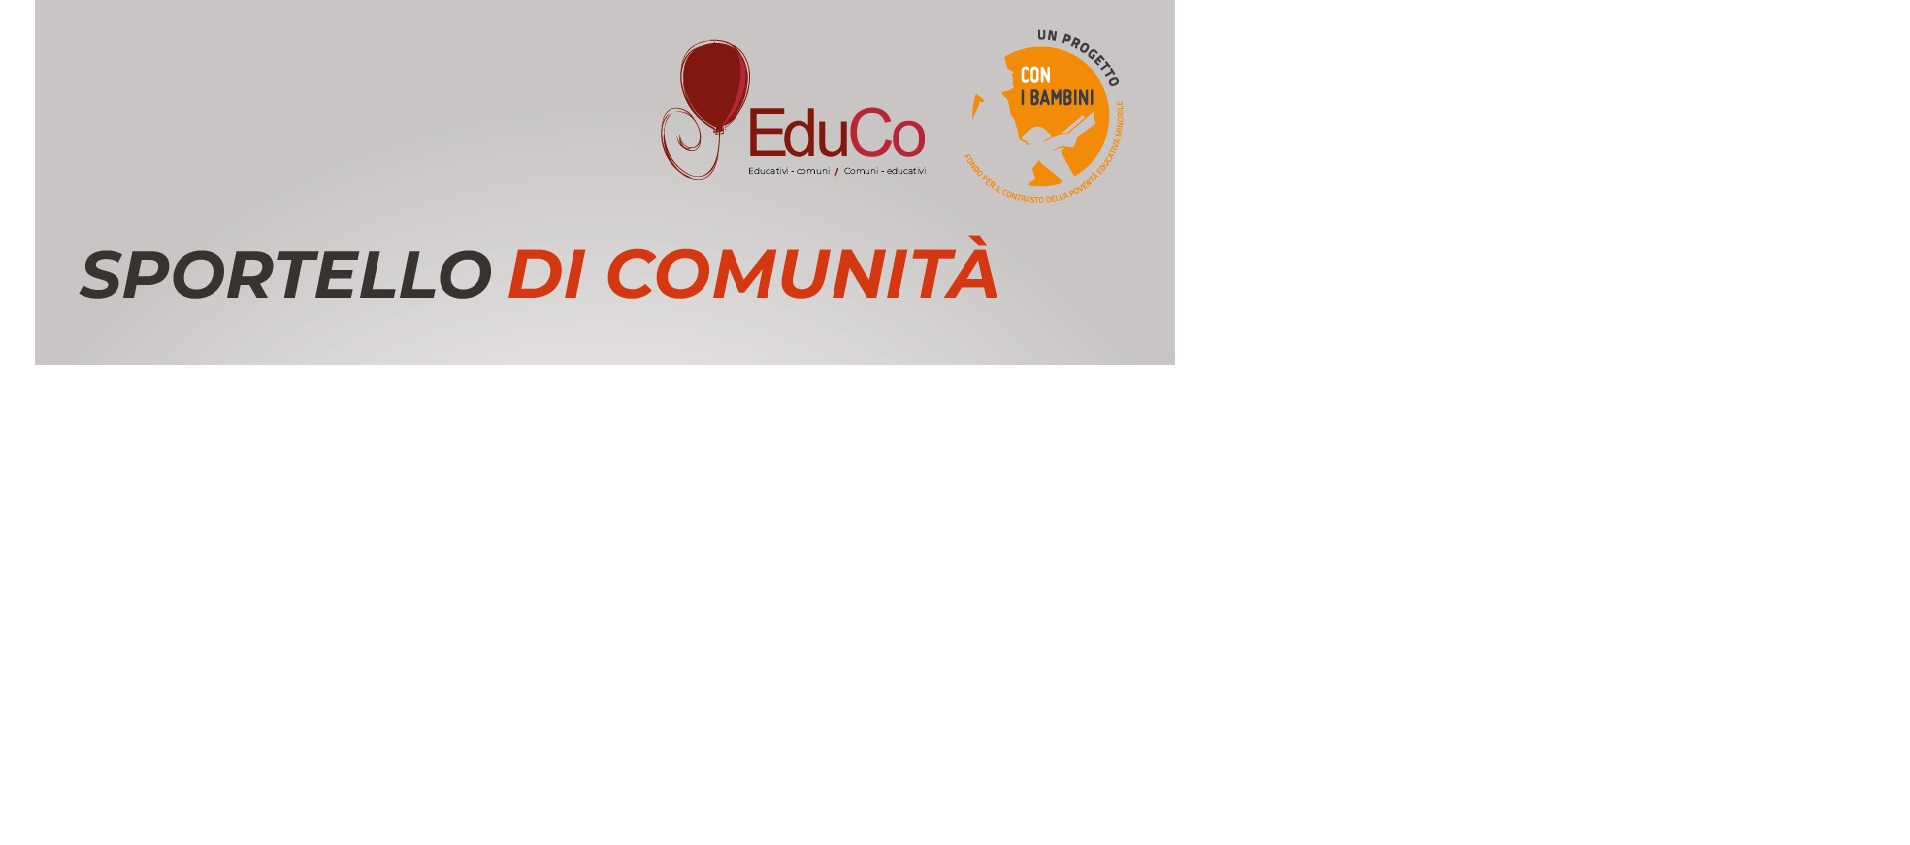 Progetto Edu.Co. attivi gli sportelli di Comunità e Scuola-Famiglia-Territorio e le attività di potenziamento degli apprendimenti scolastici